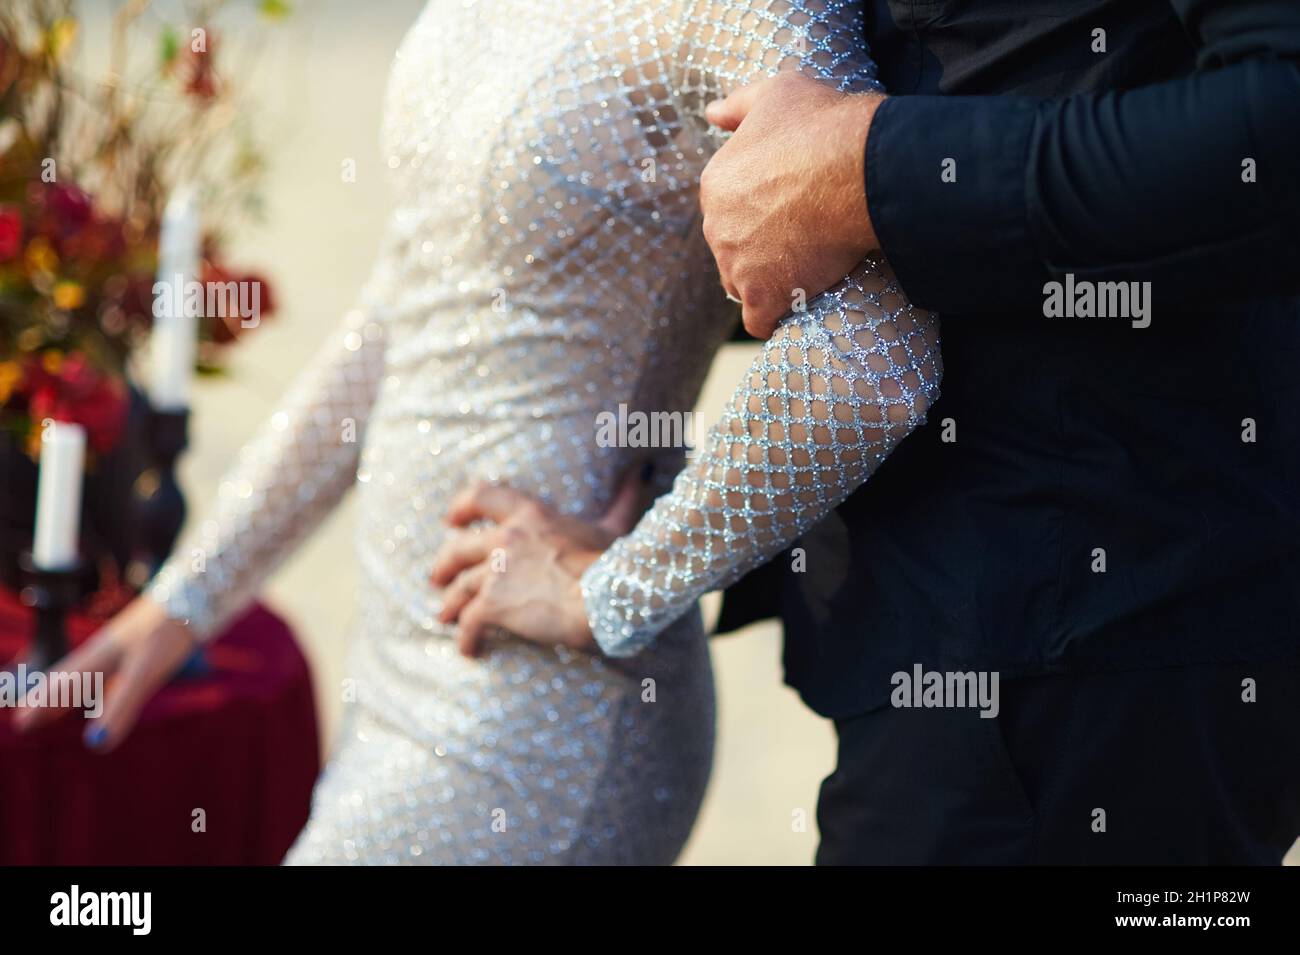 El novio sostiene el peso por el brazo. Foto de boda. Foto de stock